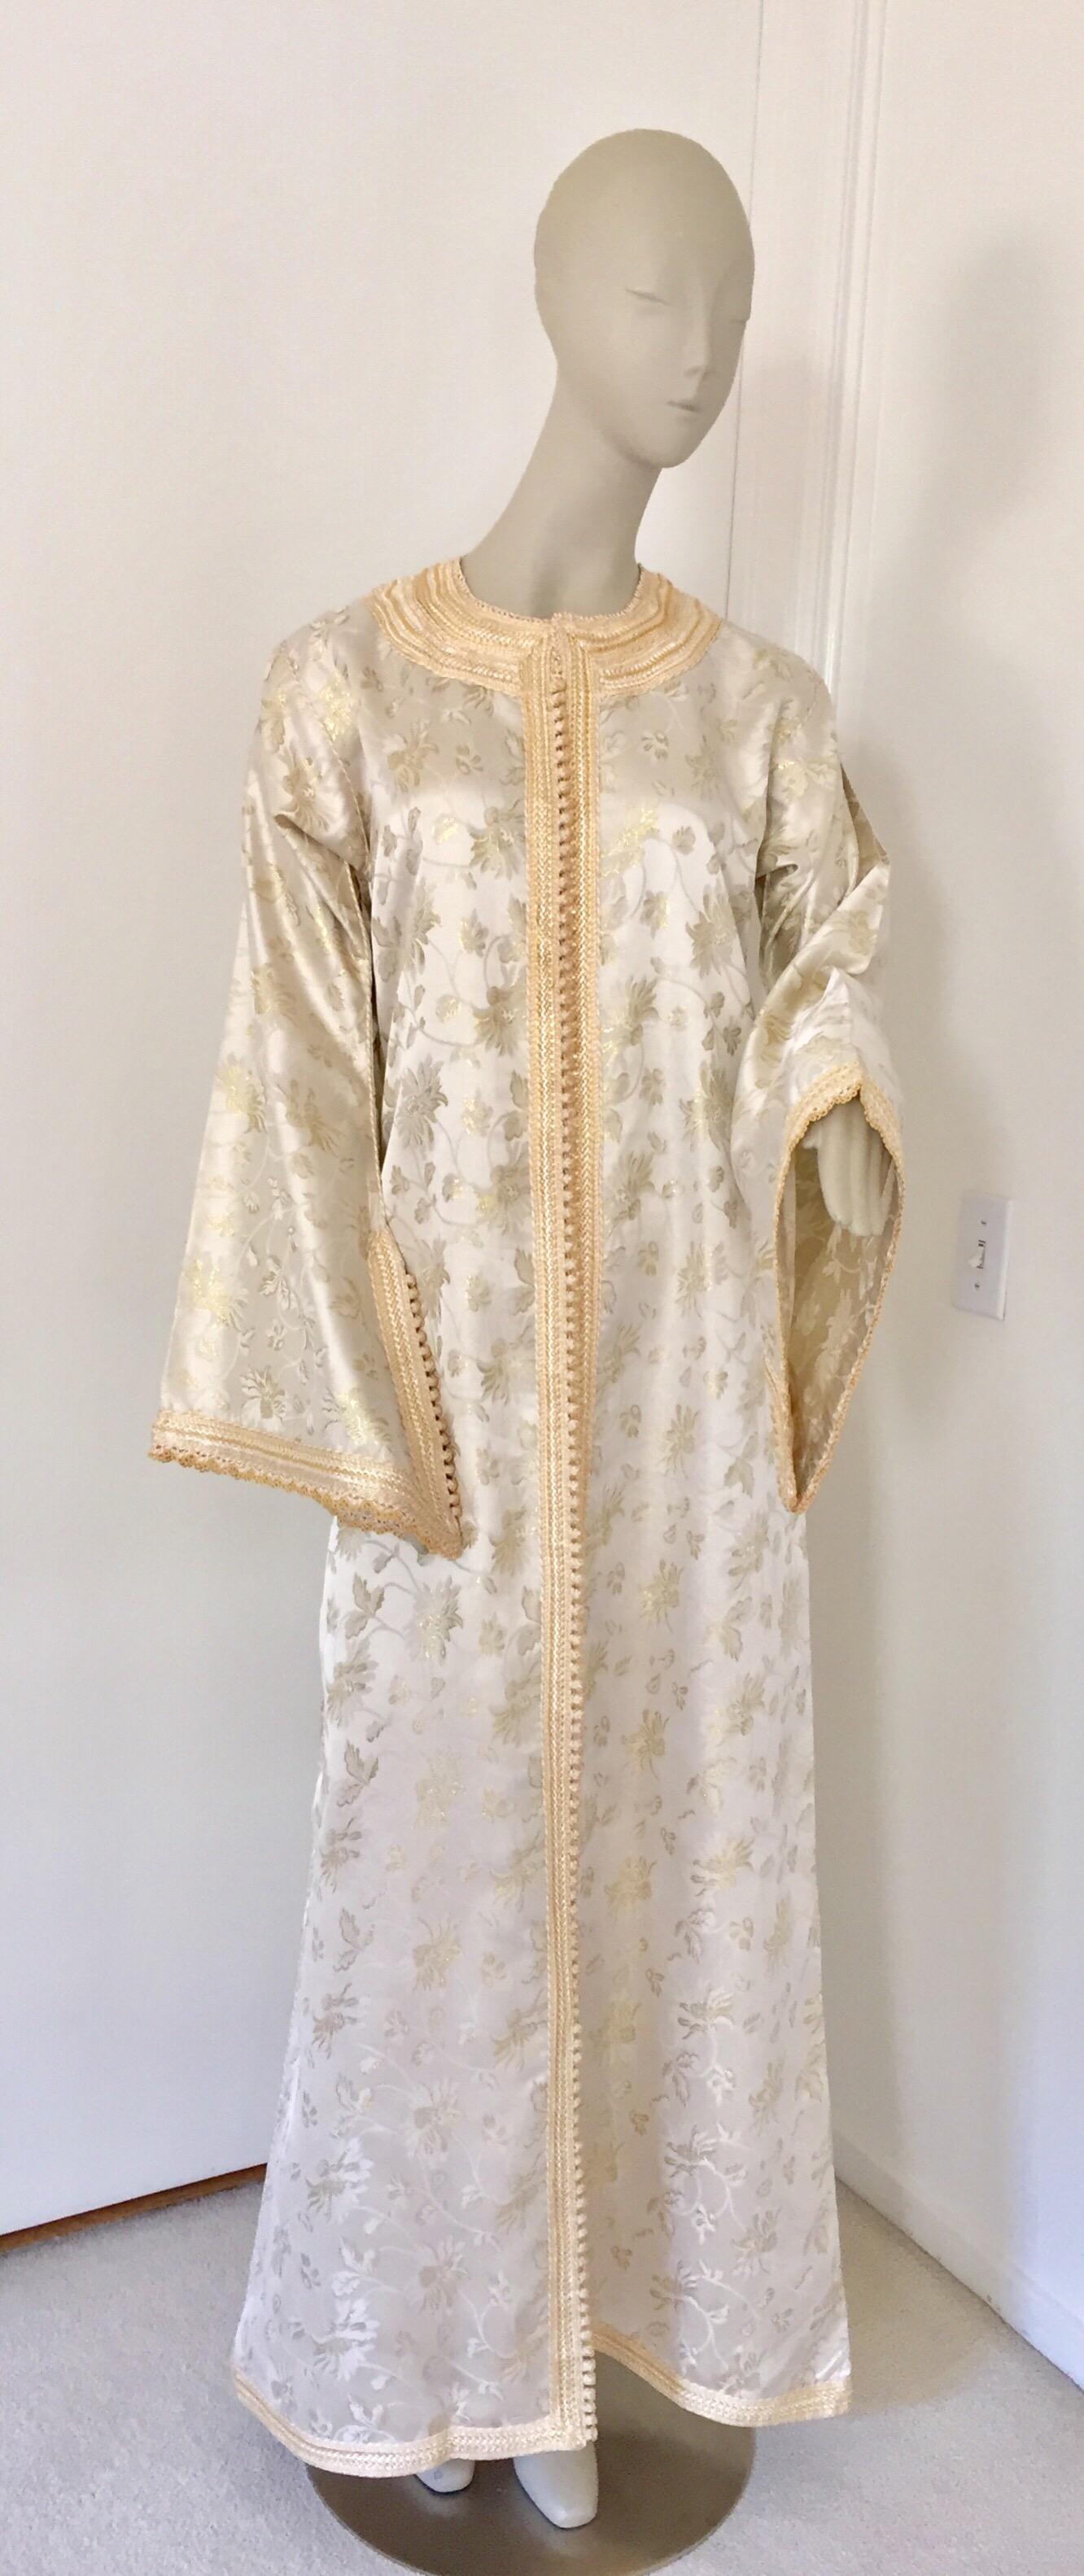 Elegante marokkanische Kaftan weiß und gold lahm metallischen Blumenbrokat kaftan.Circa 1970s.This schöne lange Kleid ist handgefertigt in Marokko und für eine entspannte Passform mit weiten Ärmeln zugeschnittenDieses lange Maxikleid Vintage Kaftan